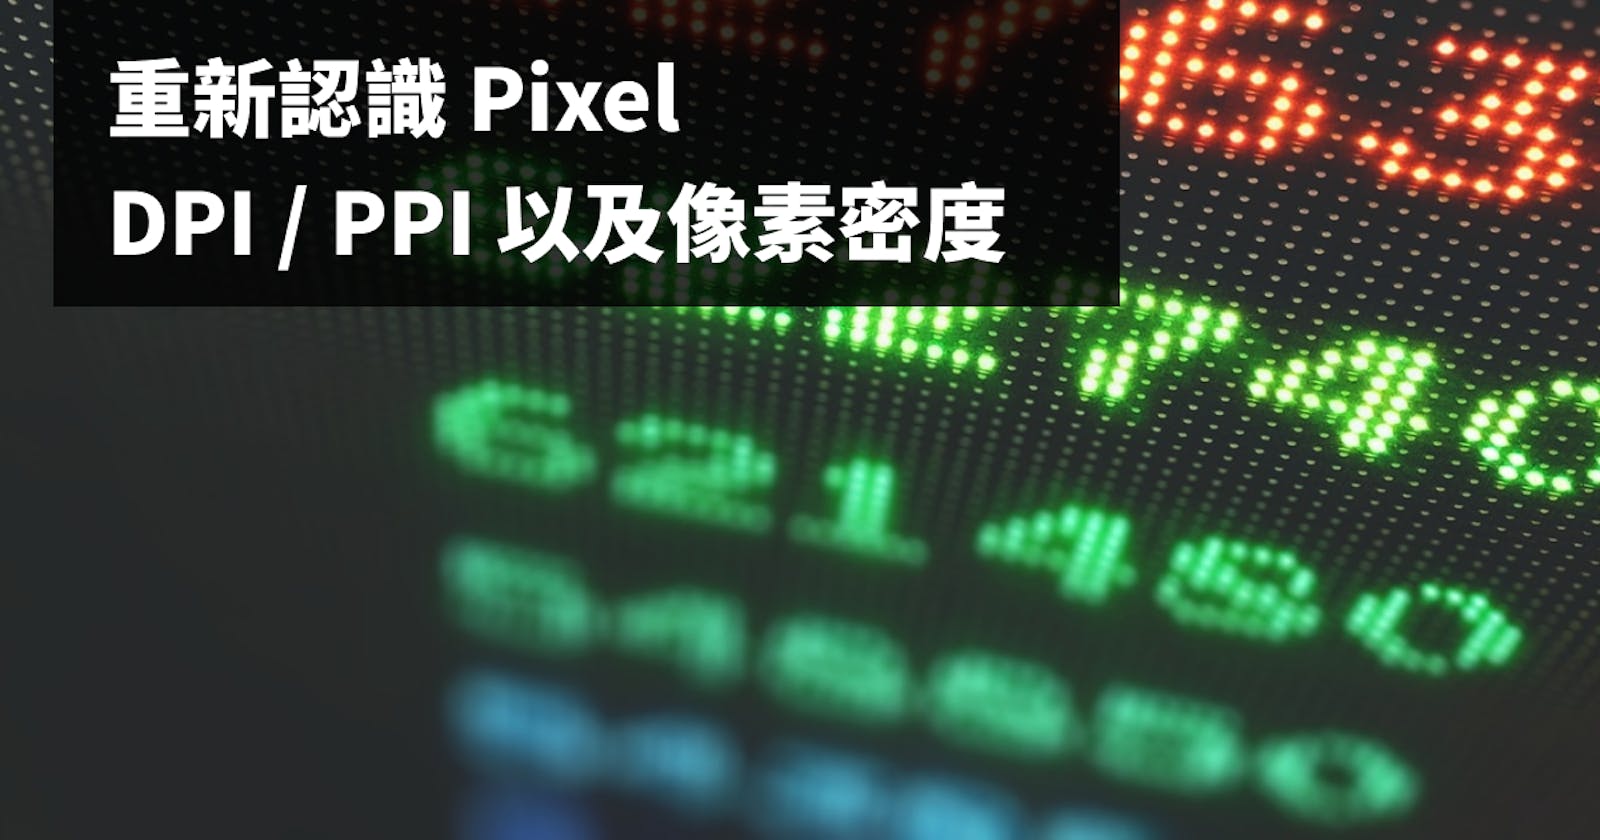 重新認識 Pixel、DPI / PPI 以及像素密度